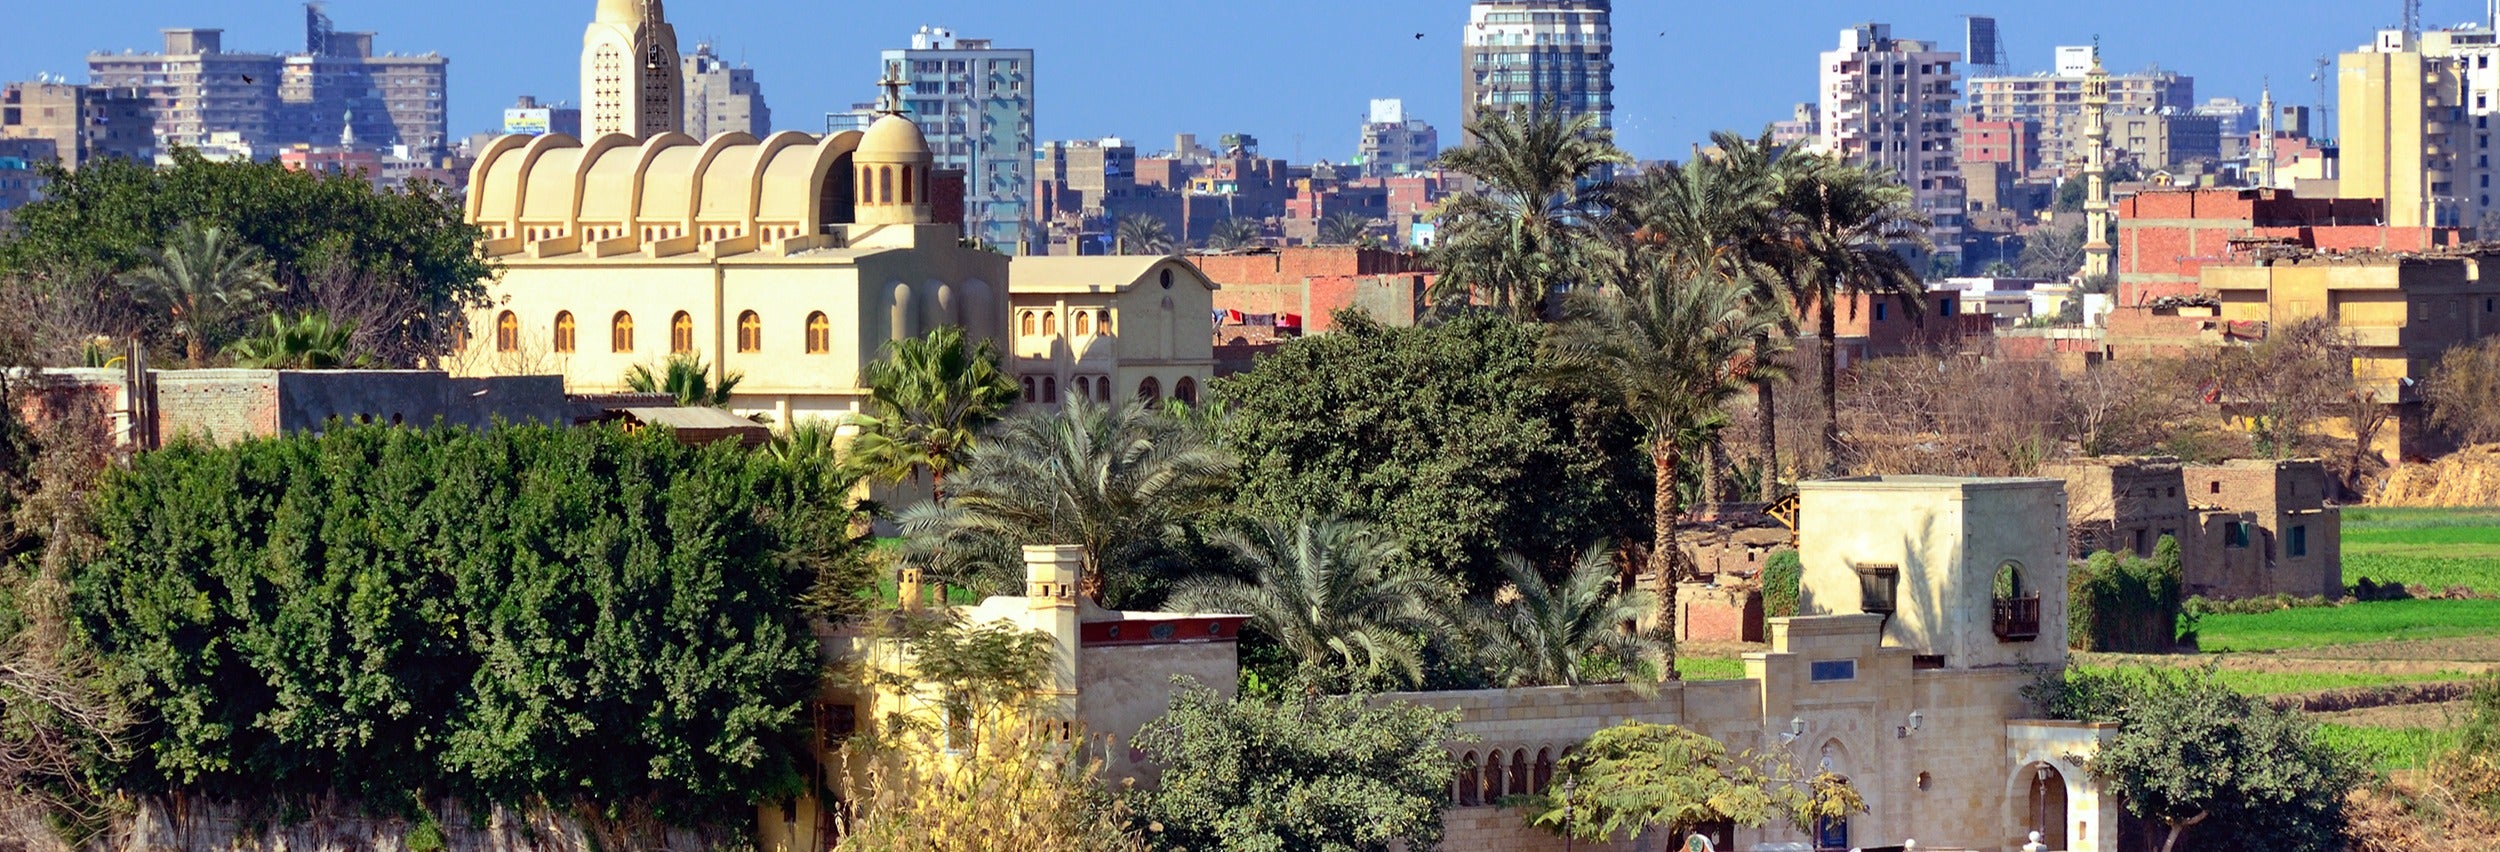 Visita guiada por el barrio copto desde El Cairo